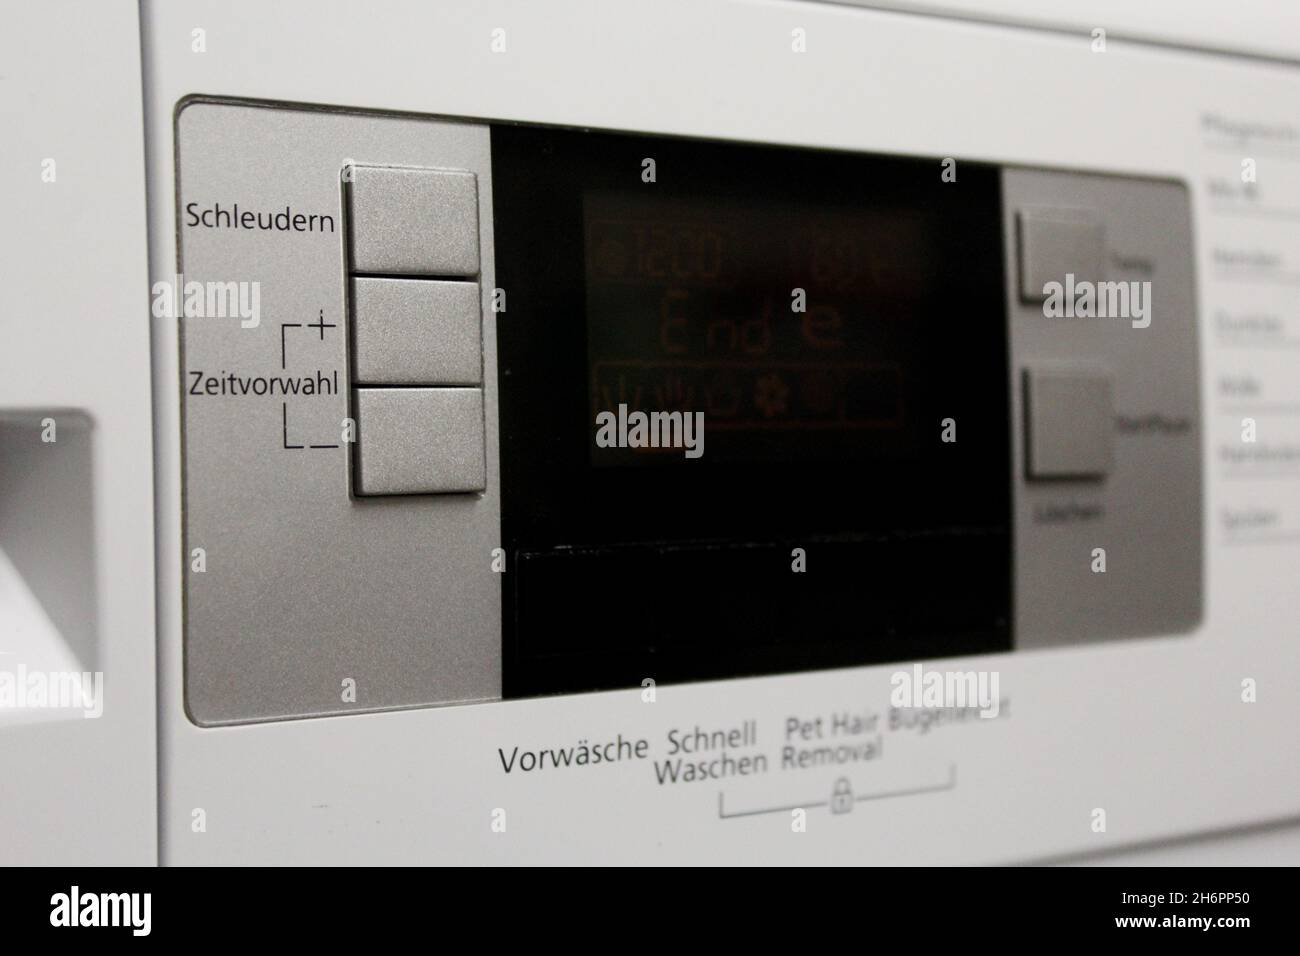 Nahaufnahme Display einer Waschmaschine mit verschiedenen Funktionen wie Schleudern und Zeitvorwahl, Vorwäsche, Schnell Waschen. Stock Photo